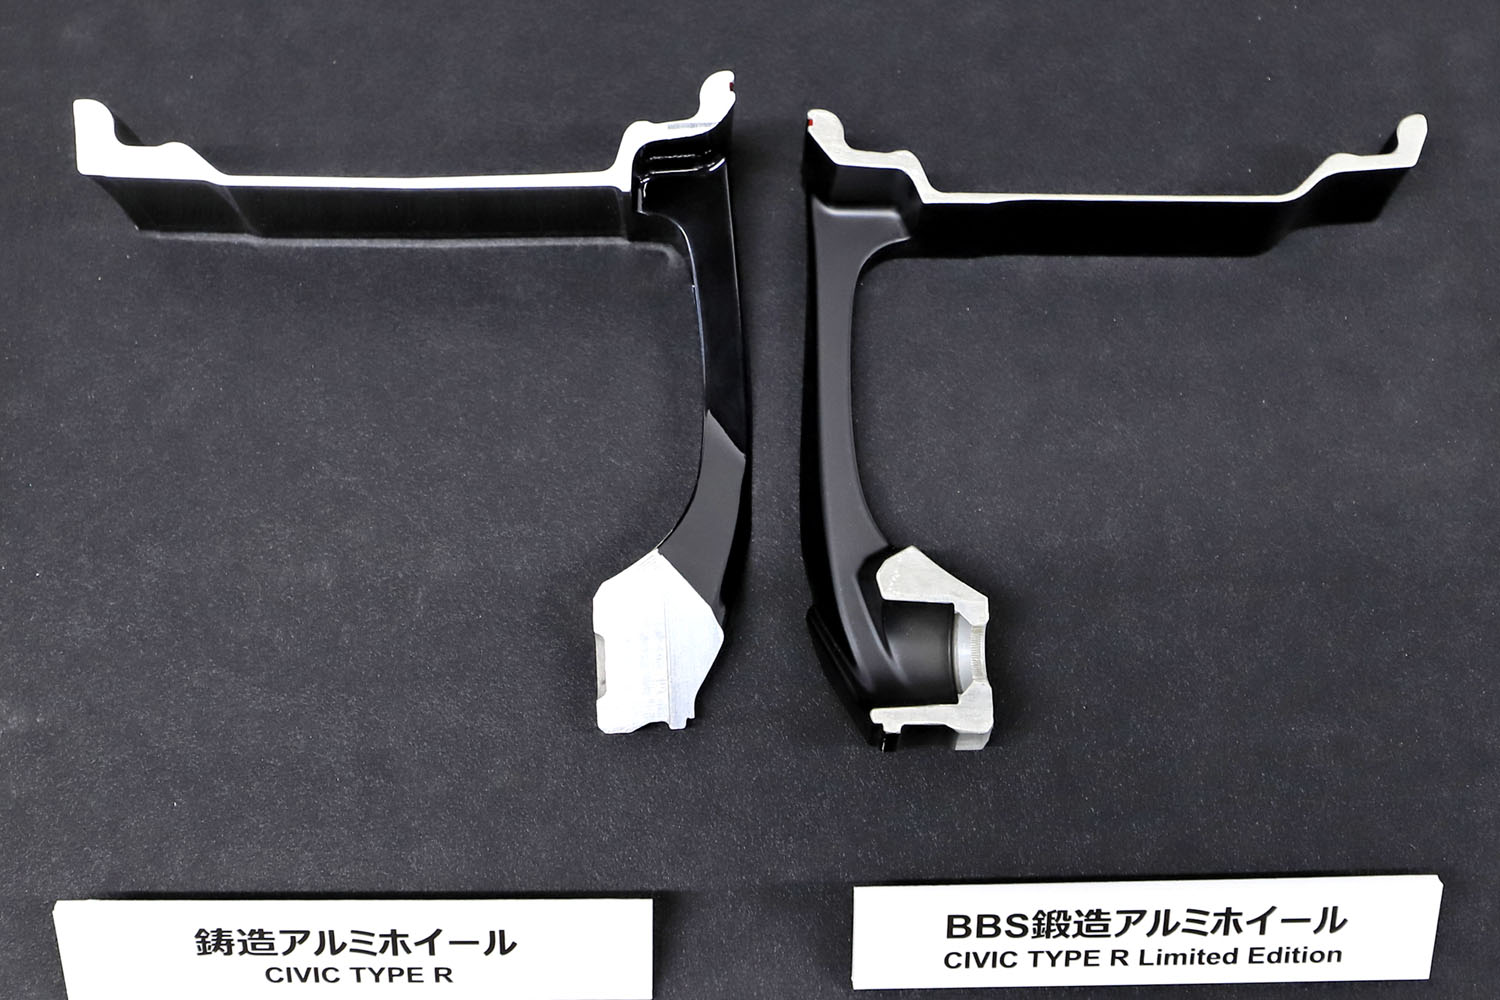 ホイールの断面見本。左が「タイプR」、右が「タイプR リミテッドエディション」のもの。リミテッドエディション用のBBS鍛造アルミホイールは、スポークの付け根が強く、リムが薄く加工されている。